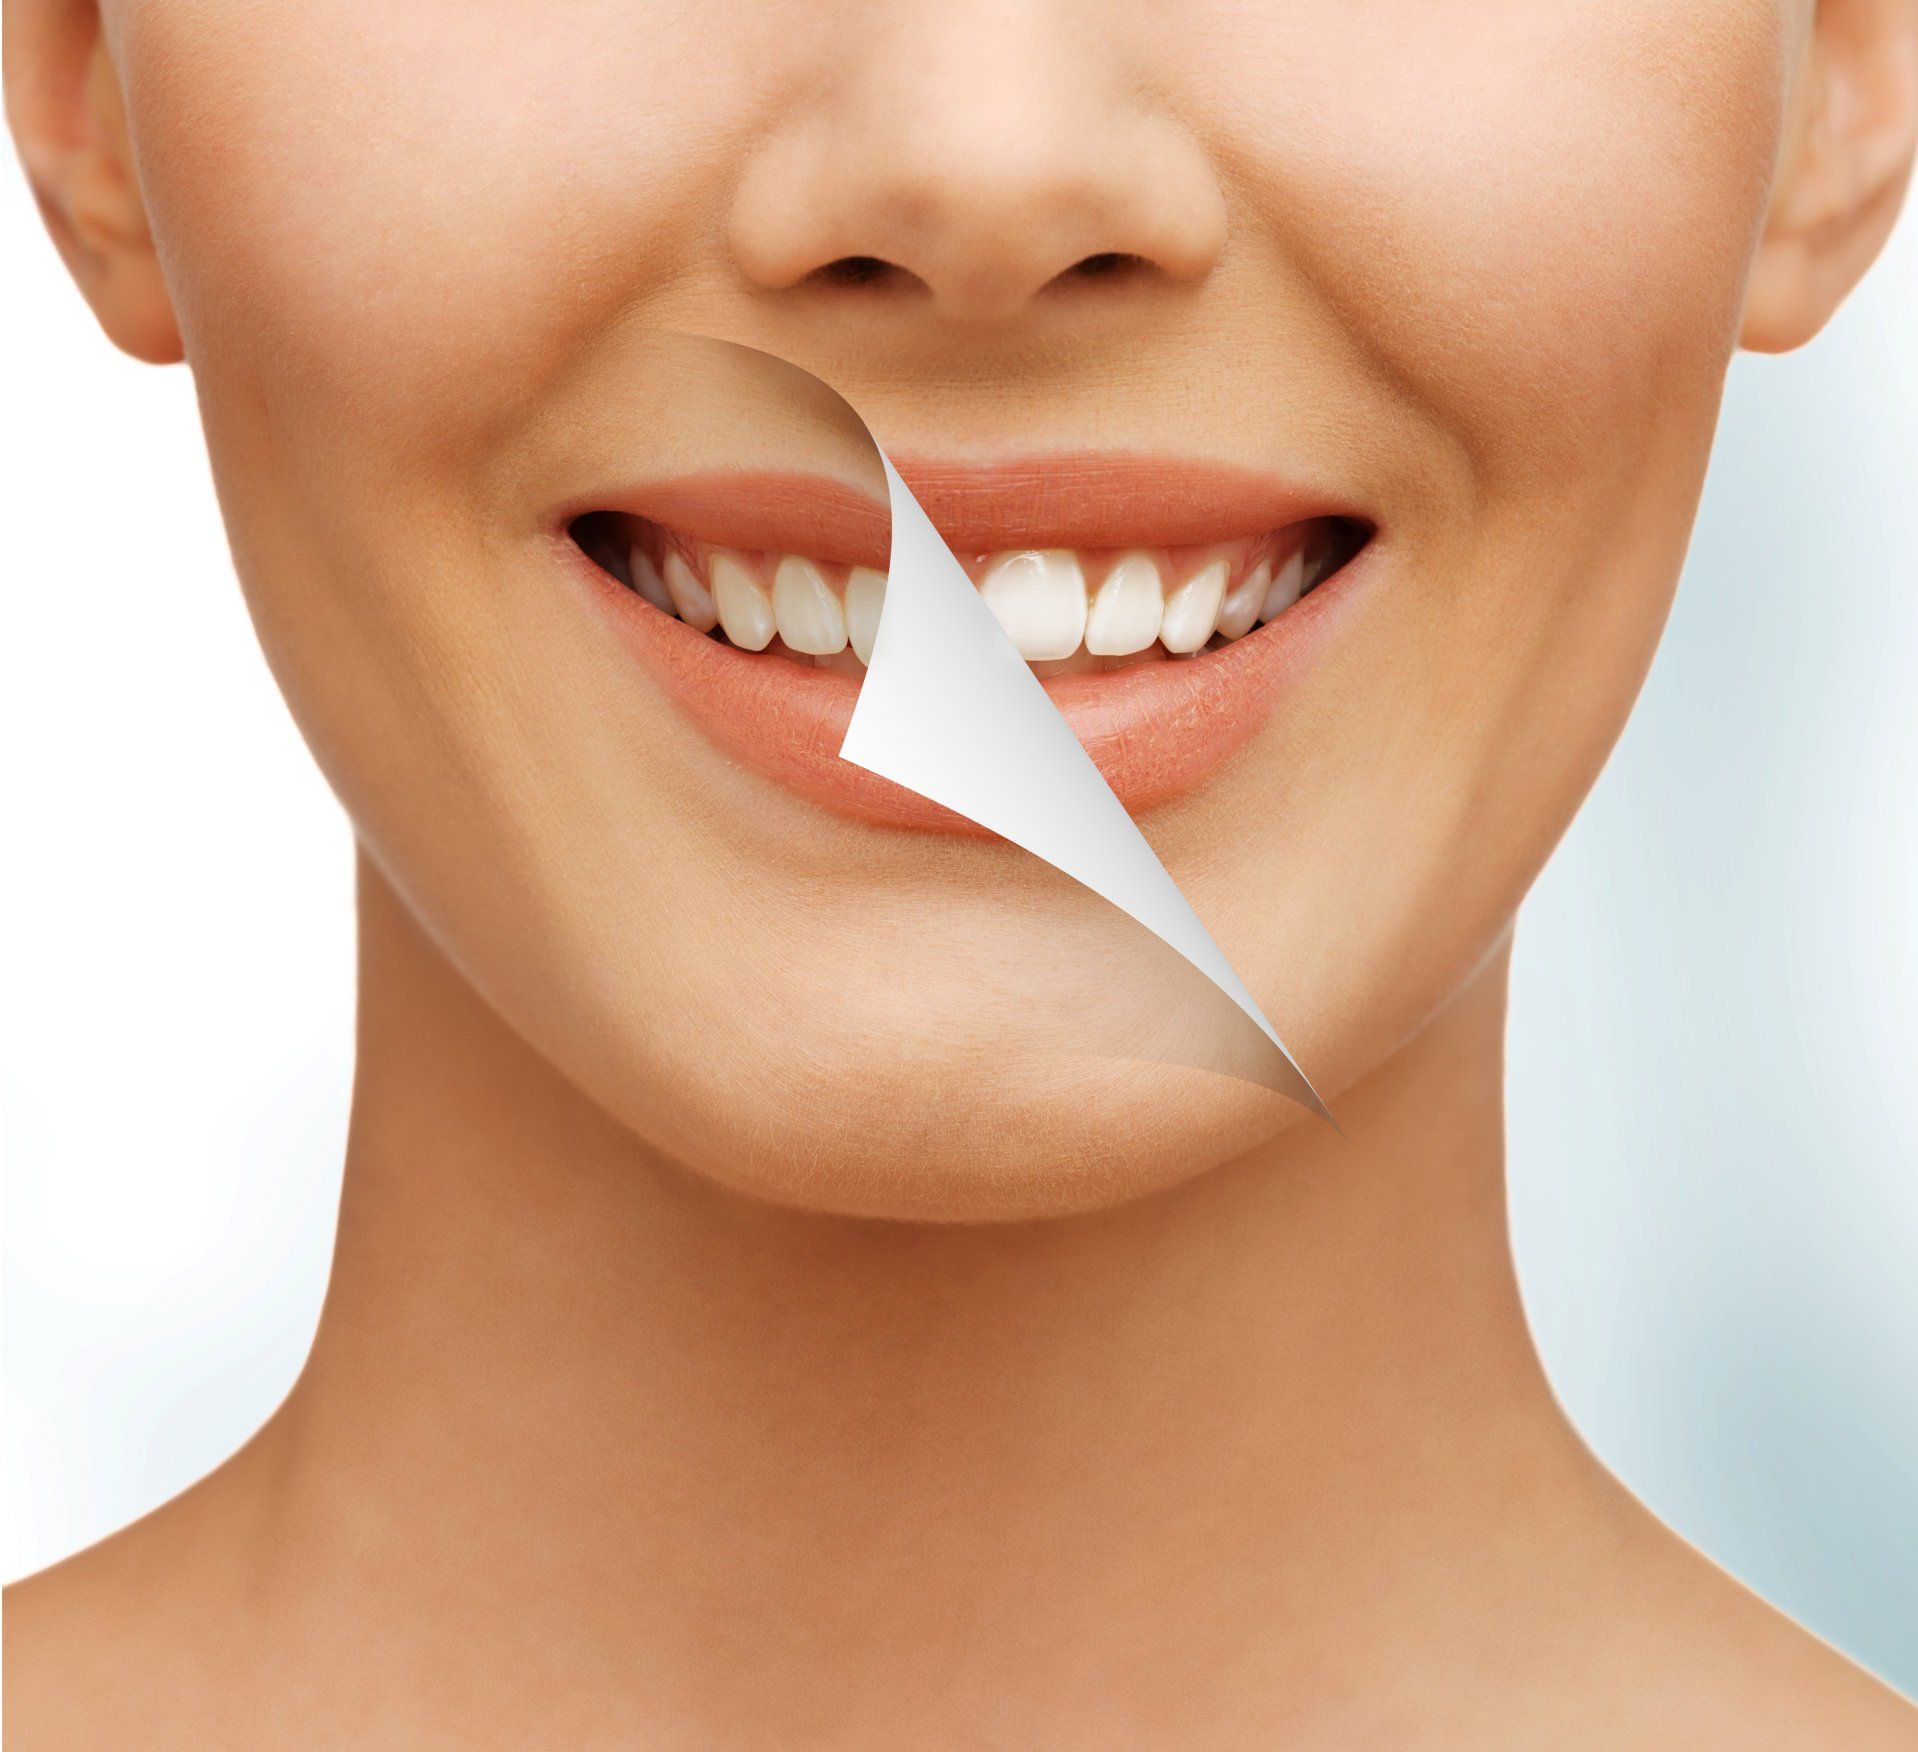 Ellicott City Dentistry - Teeth Whitening